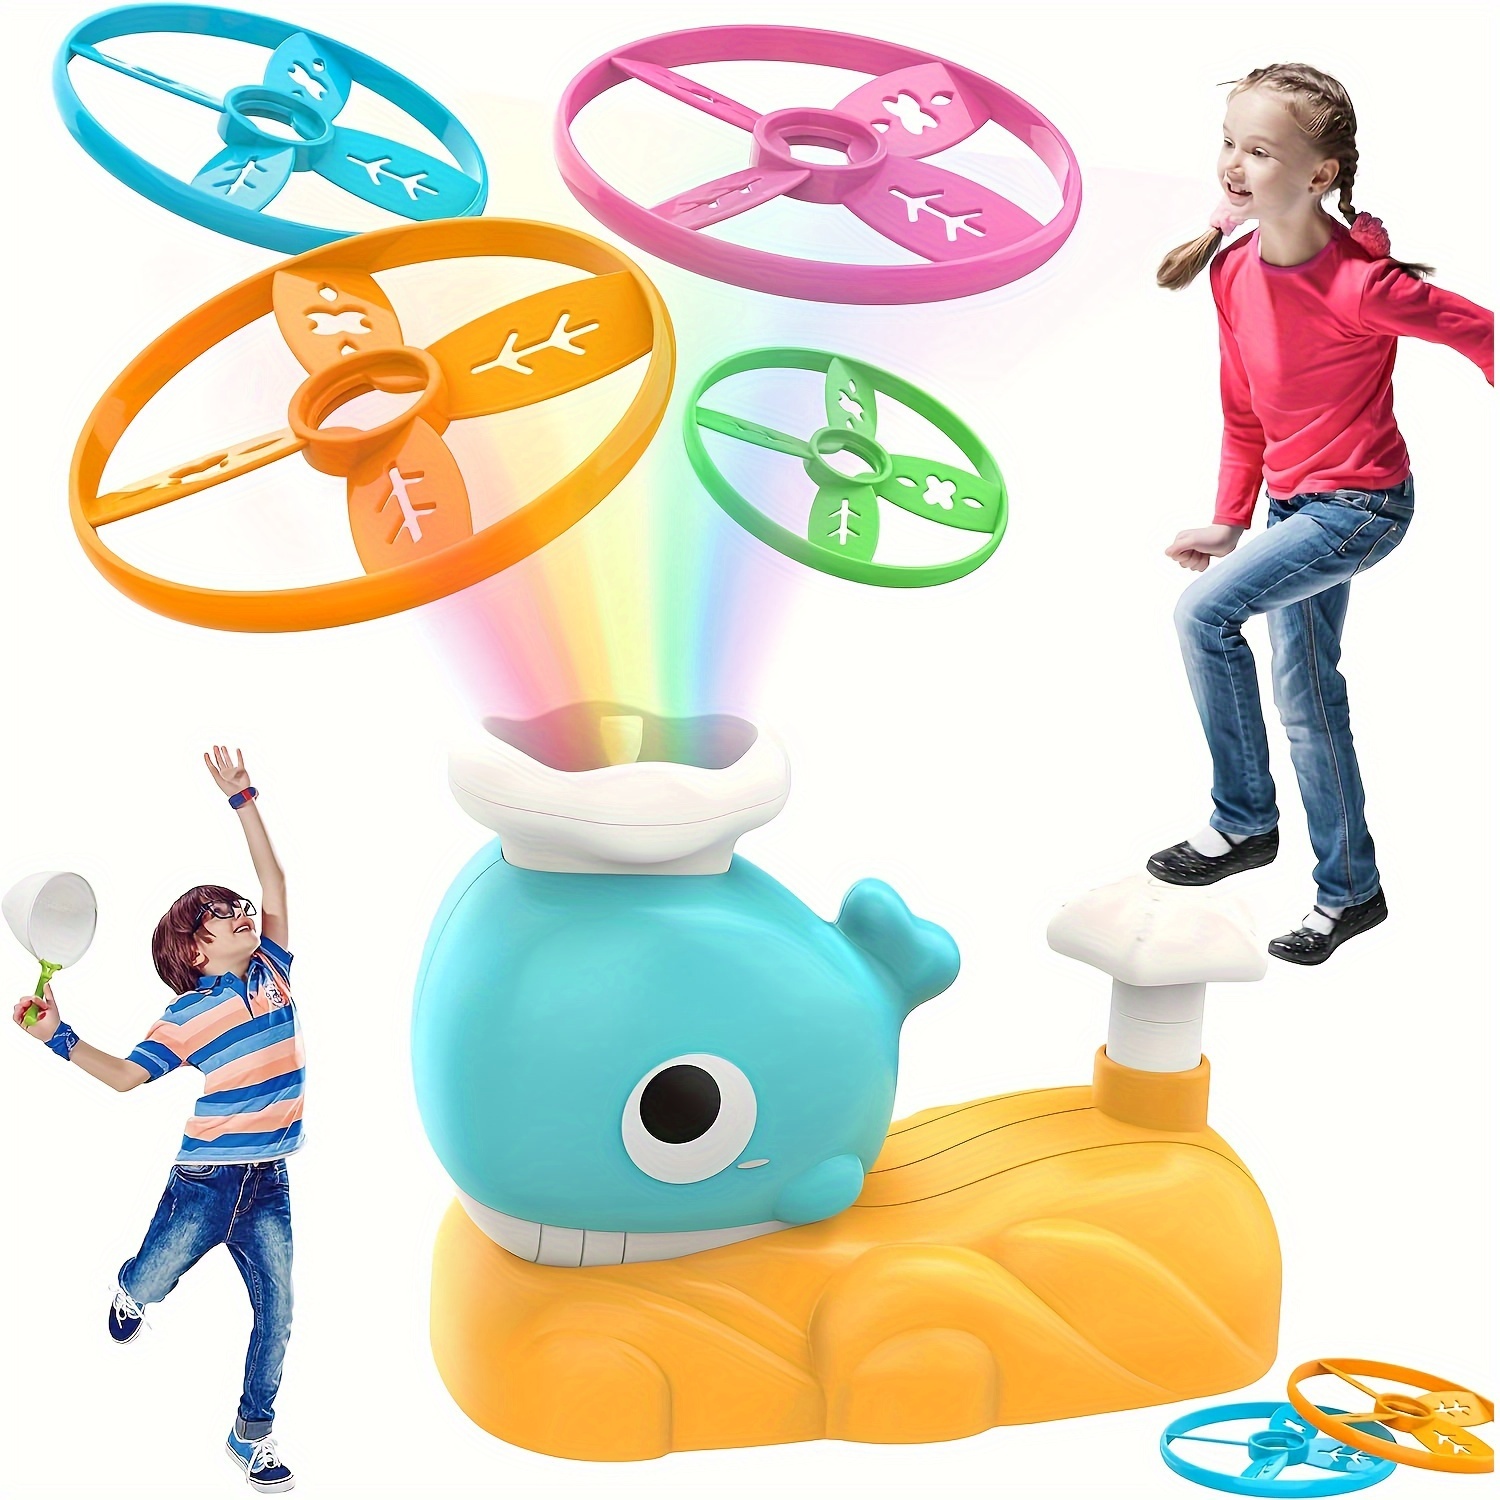 Jouets pour enfants âgés de 4 à 8 ans, Lanceur de disques volants Jouet  Cadeaux de sport pour enfants garçons et filles, Soucoupe volante Jouet